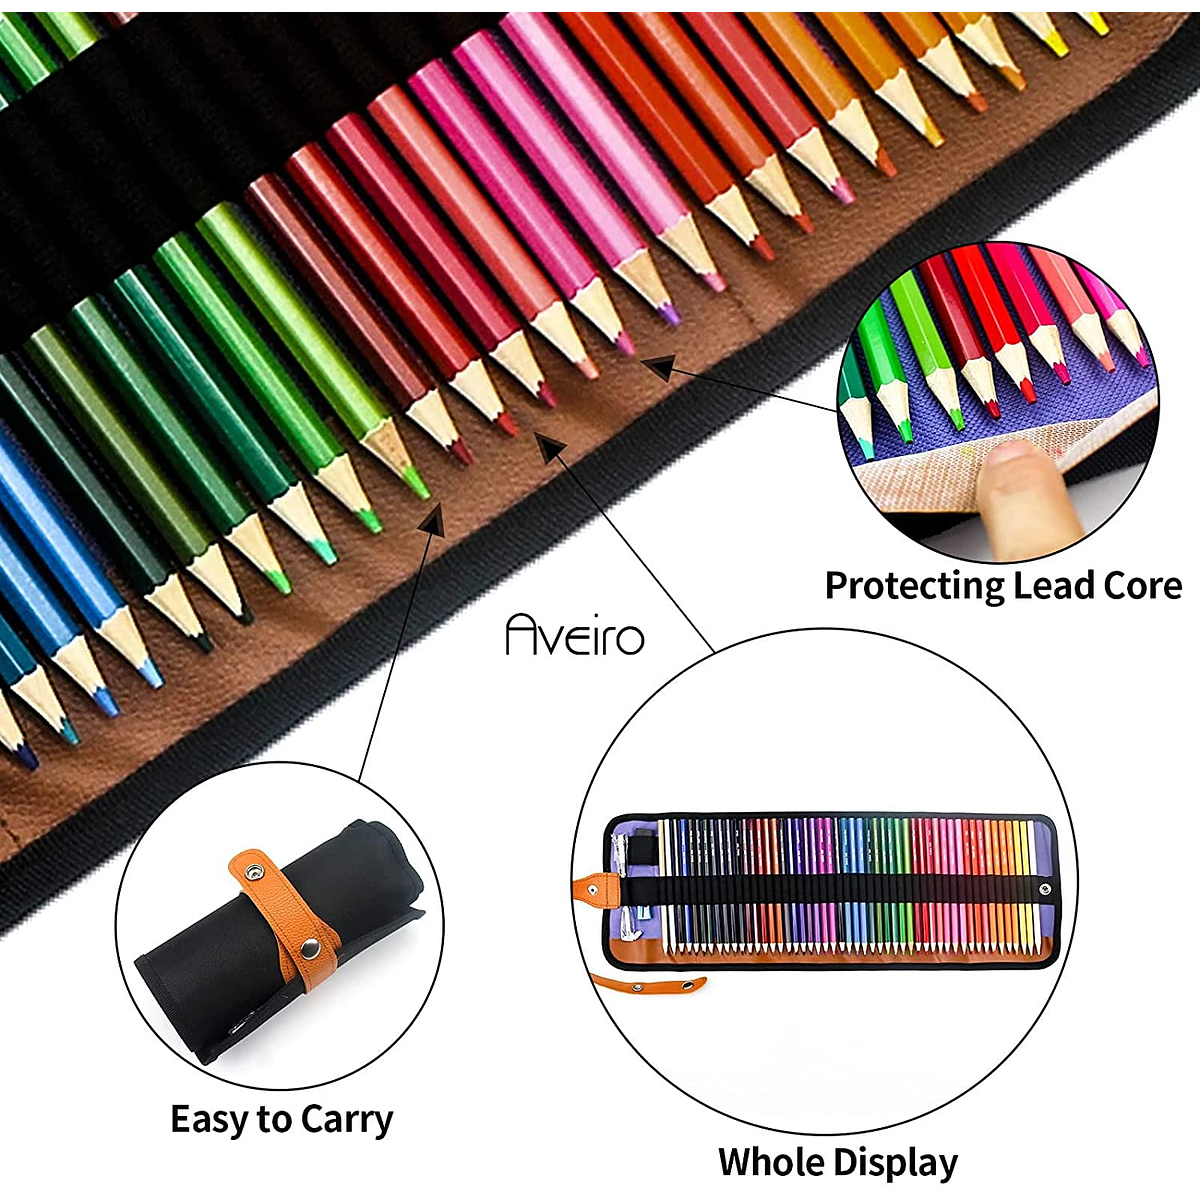 50 Lápices de Colores Profesionales Juego de Lápices para Dibujo